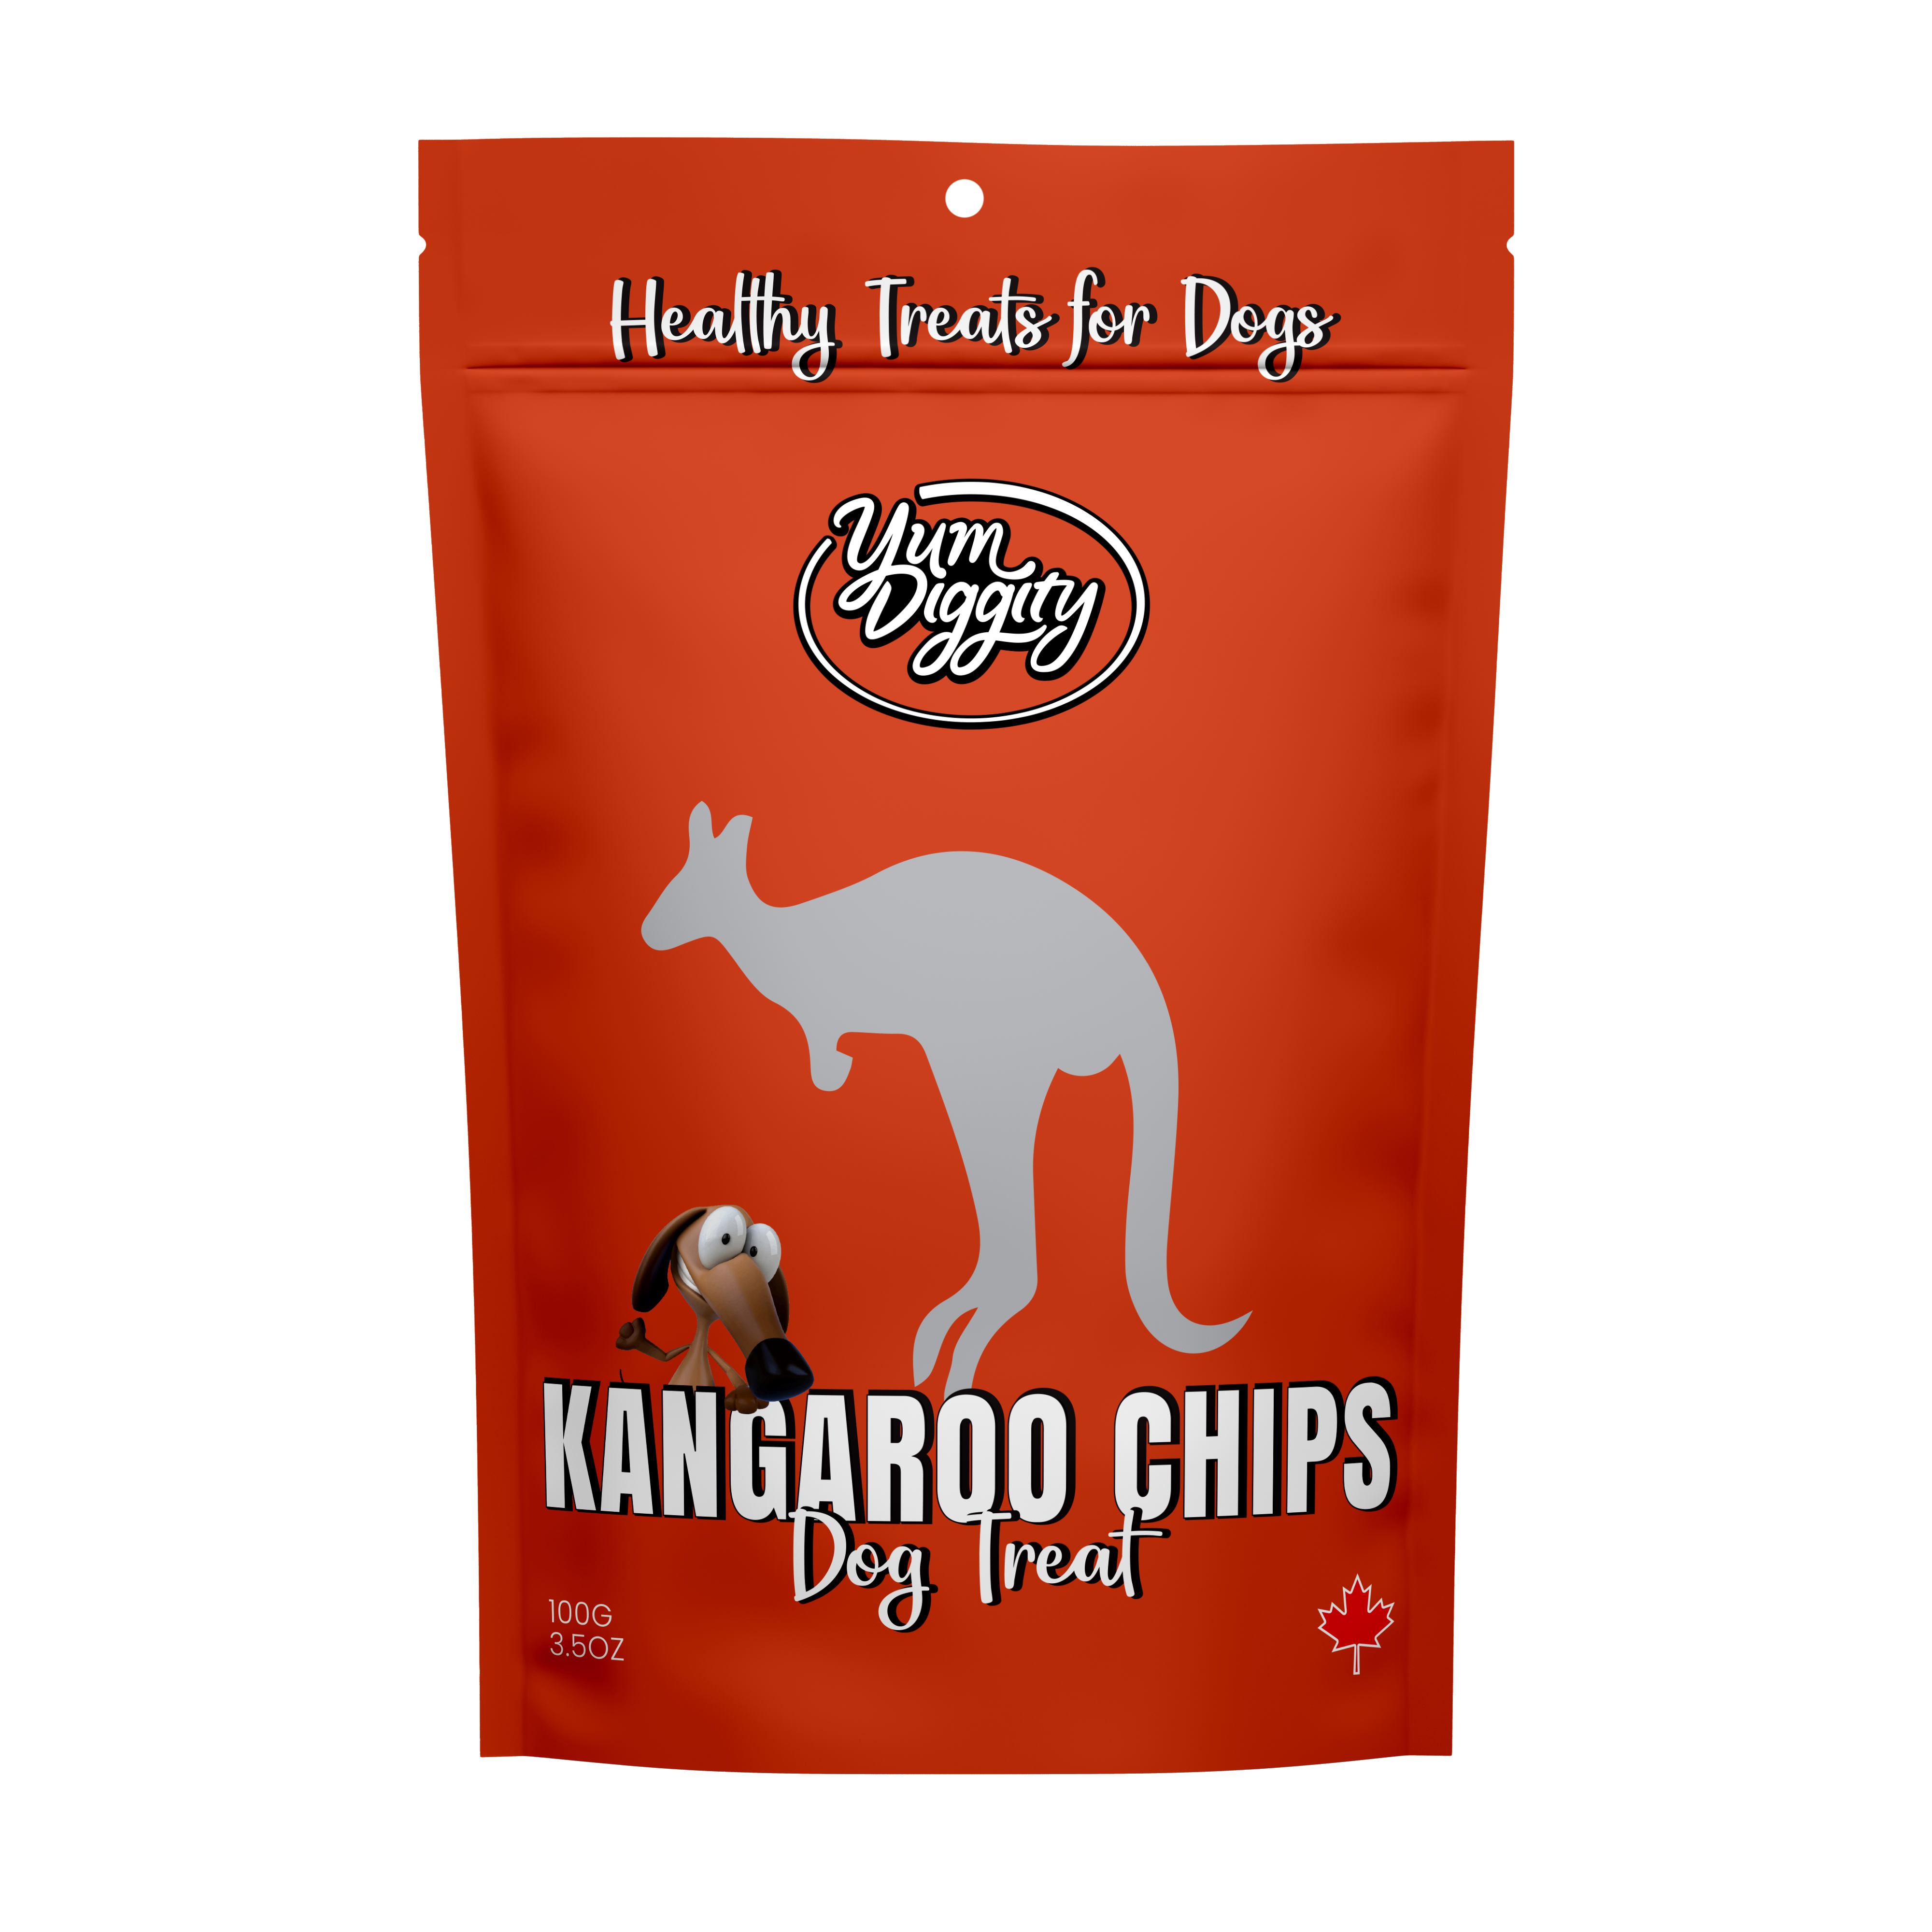 Yum Diggity - Kangaroo Jerky Chips